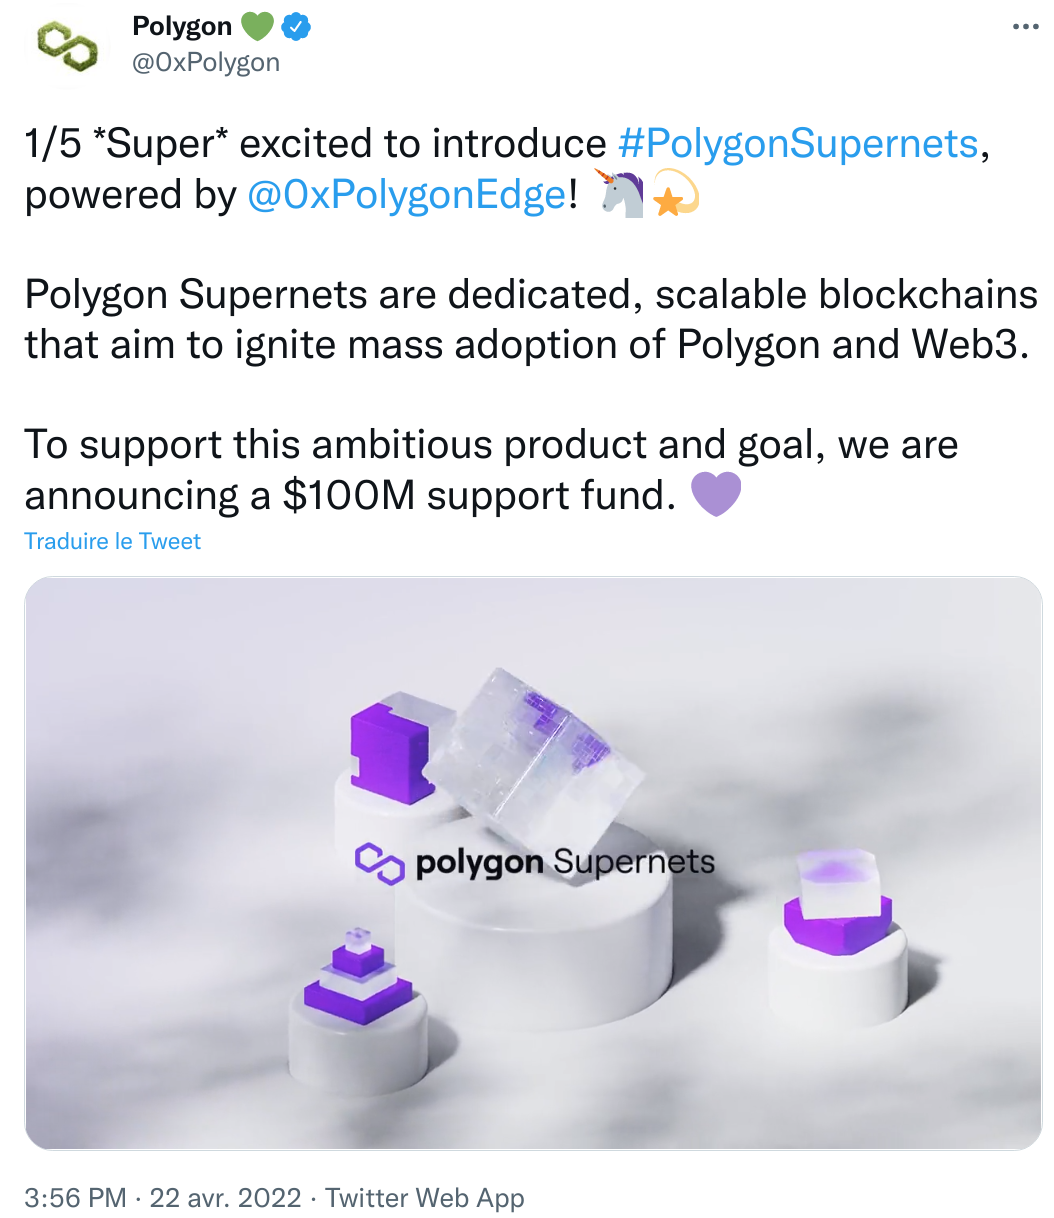 Les Polygon Supernets osnt des blockchains scalables qui visent à initier l'adoption de Polygon et du Web3 